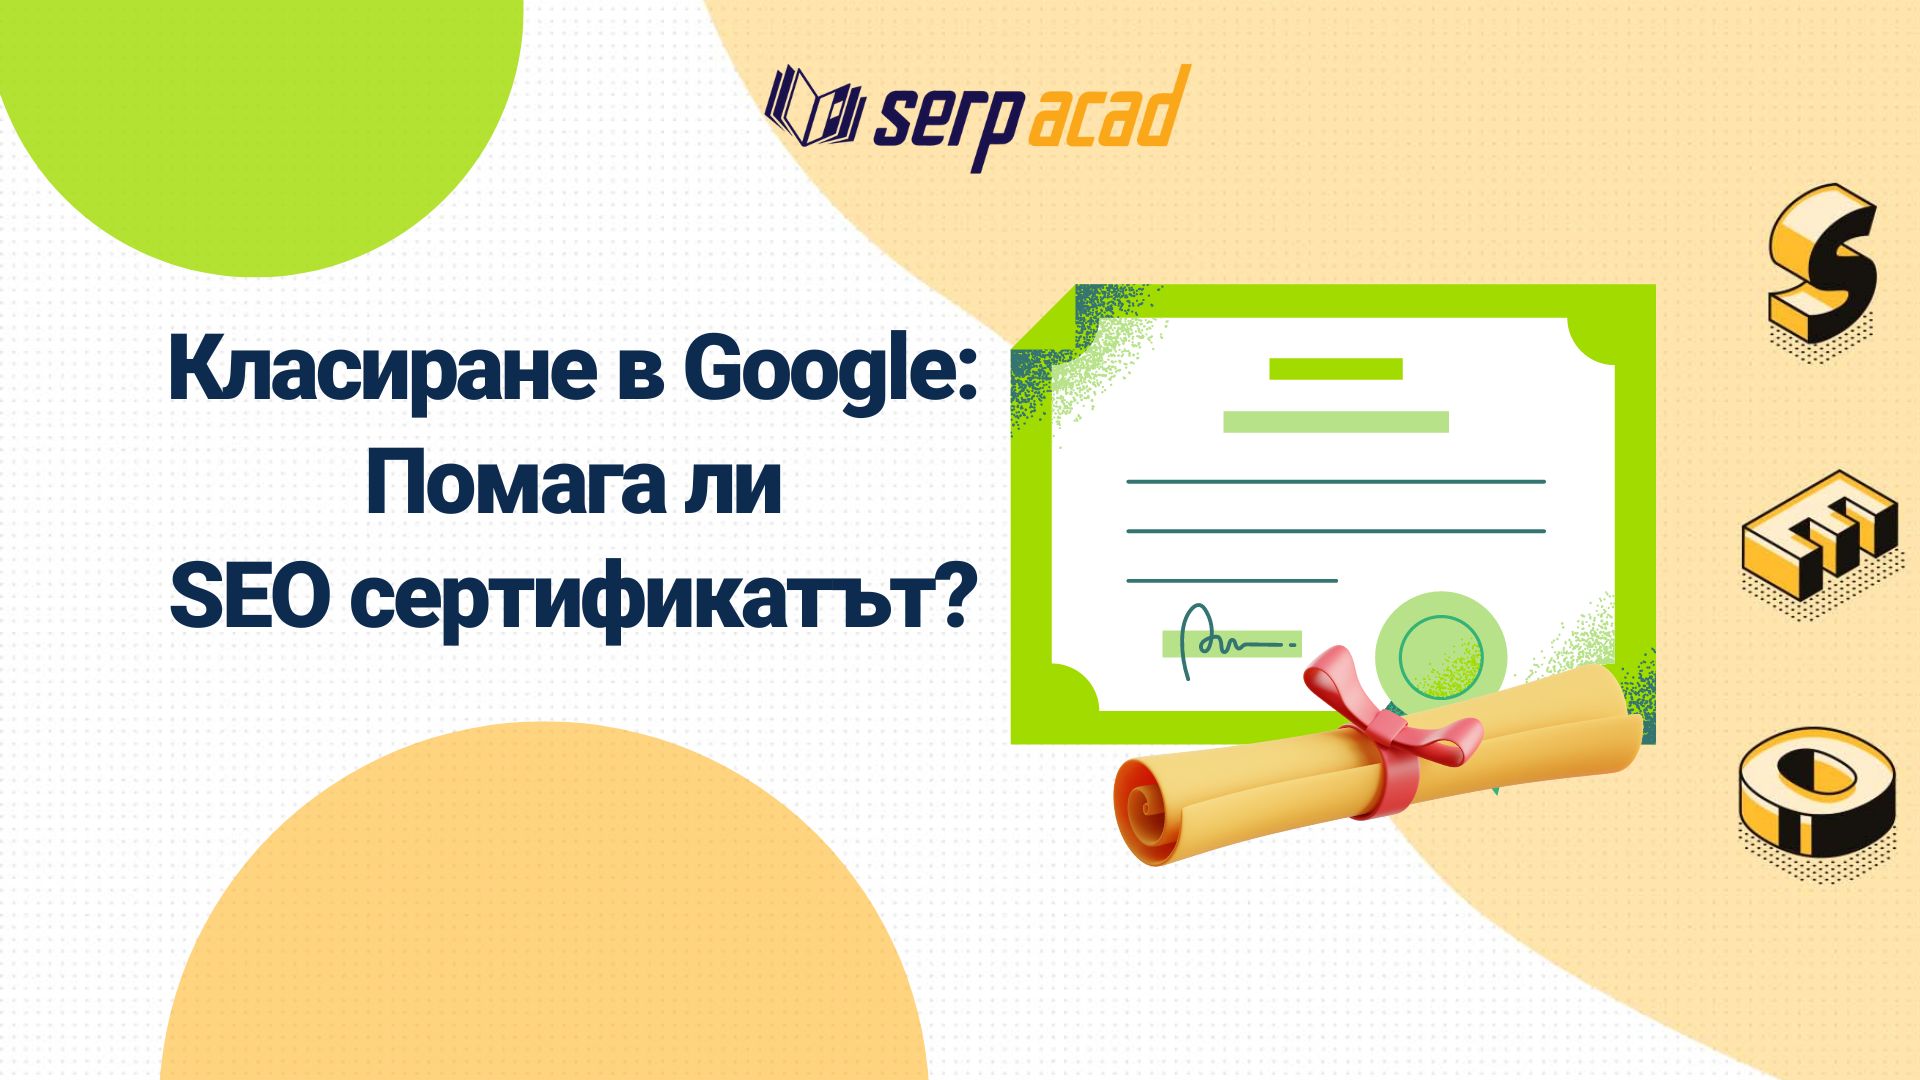 SERP Acad. - Google SEO сертификат: има ли сертификат, който да ни помогне за класиране в Google?